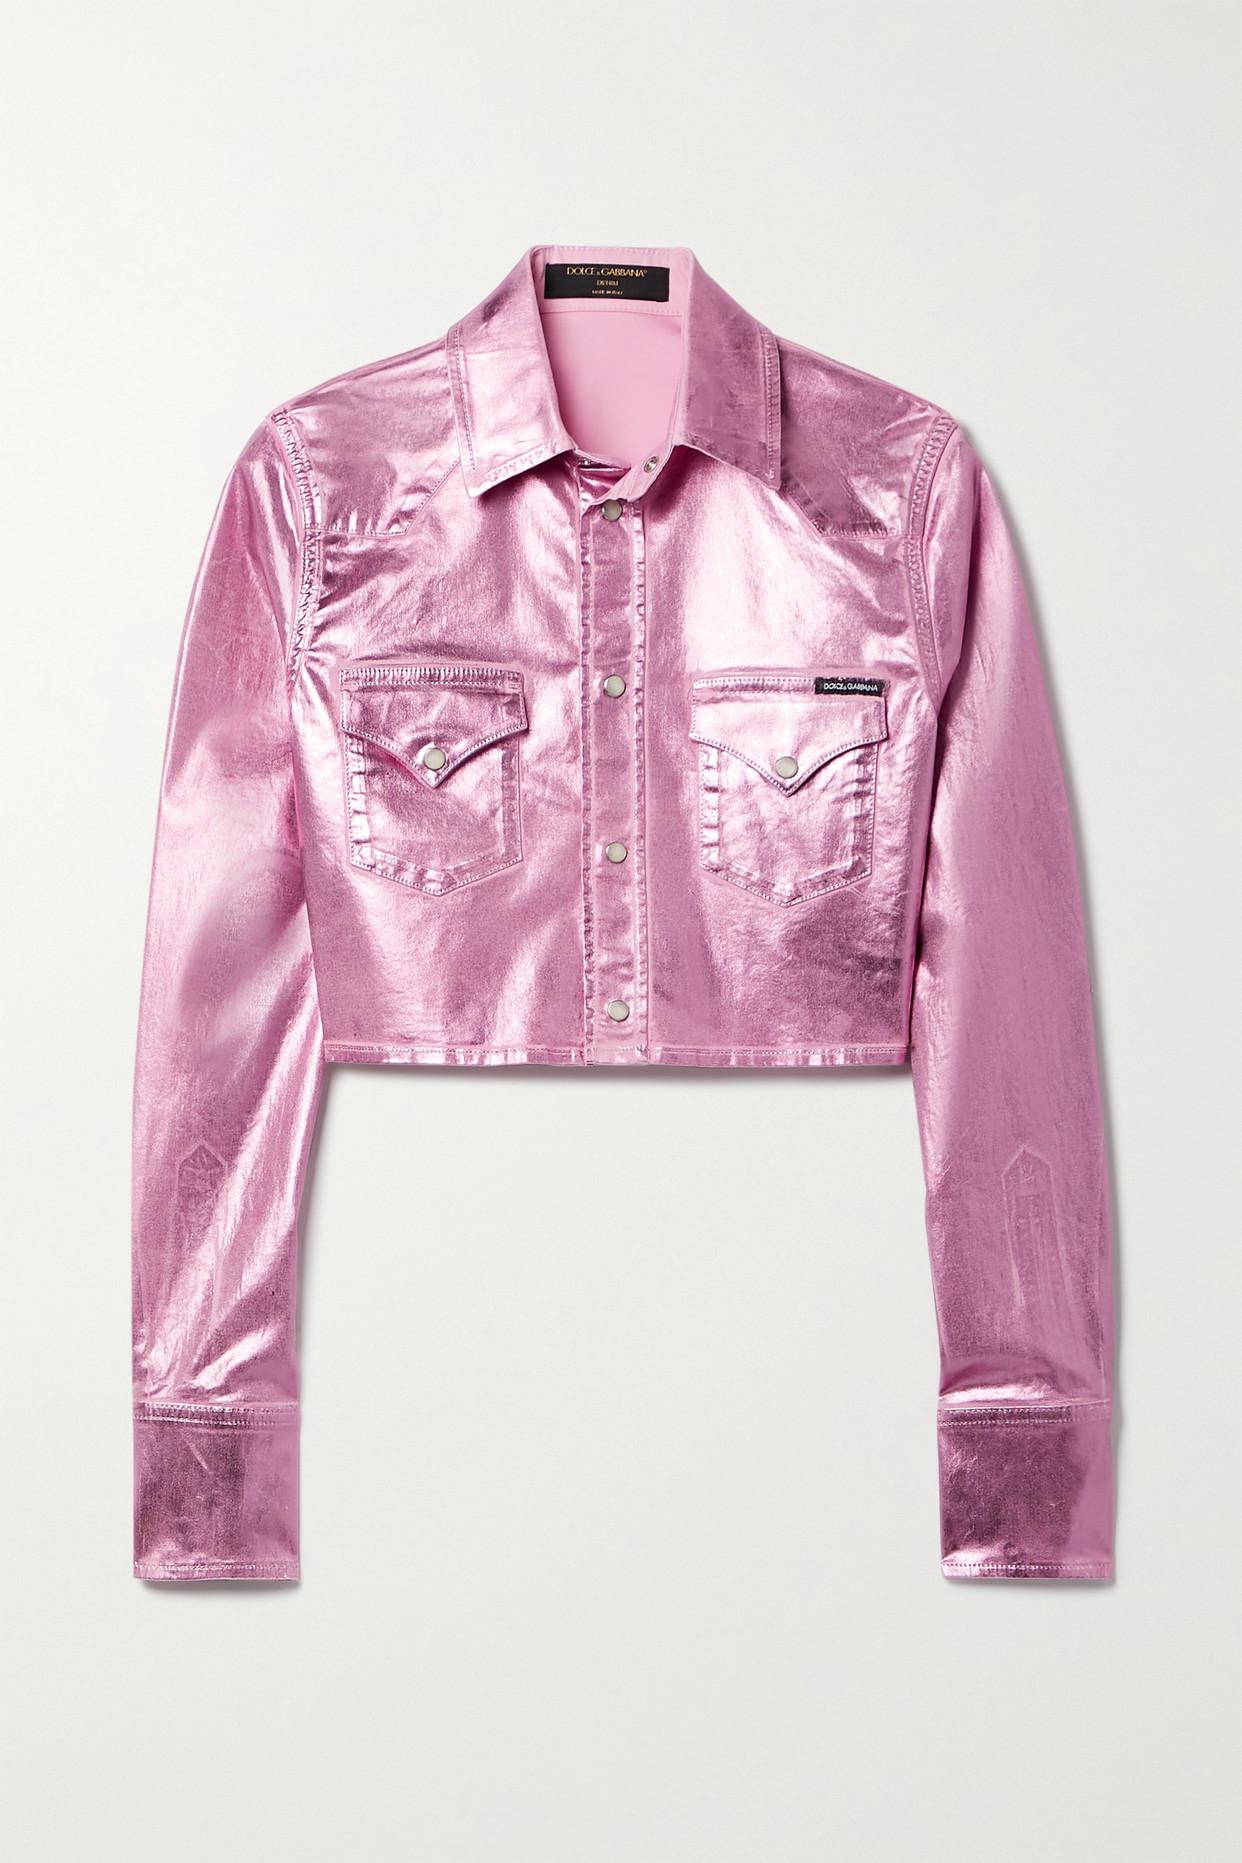 Dolce & Gabbana Pop Verkürzte Jeansjacke Mit Metallic-beschichtung in Pink  | Lyst AT